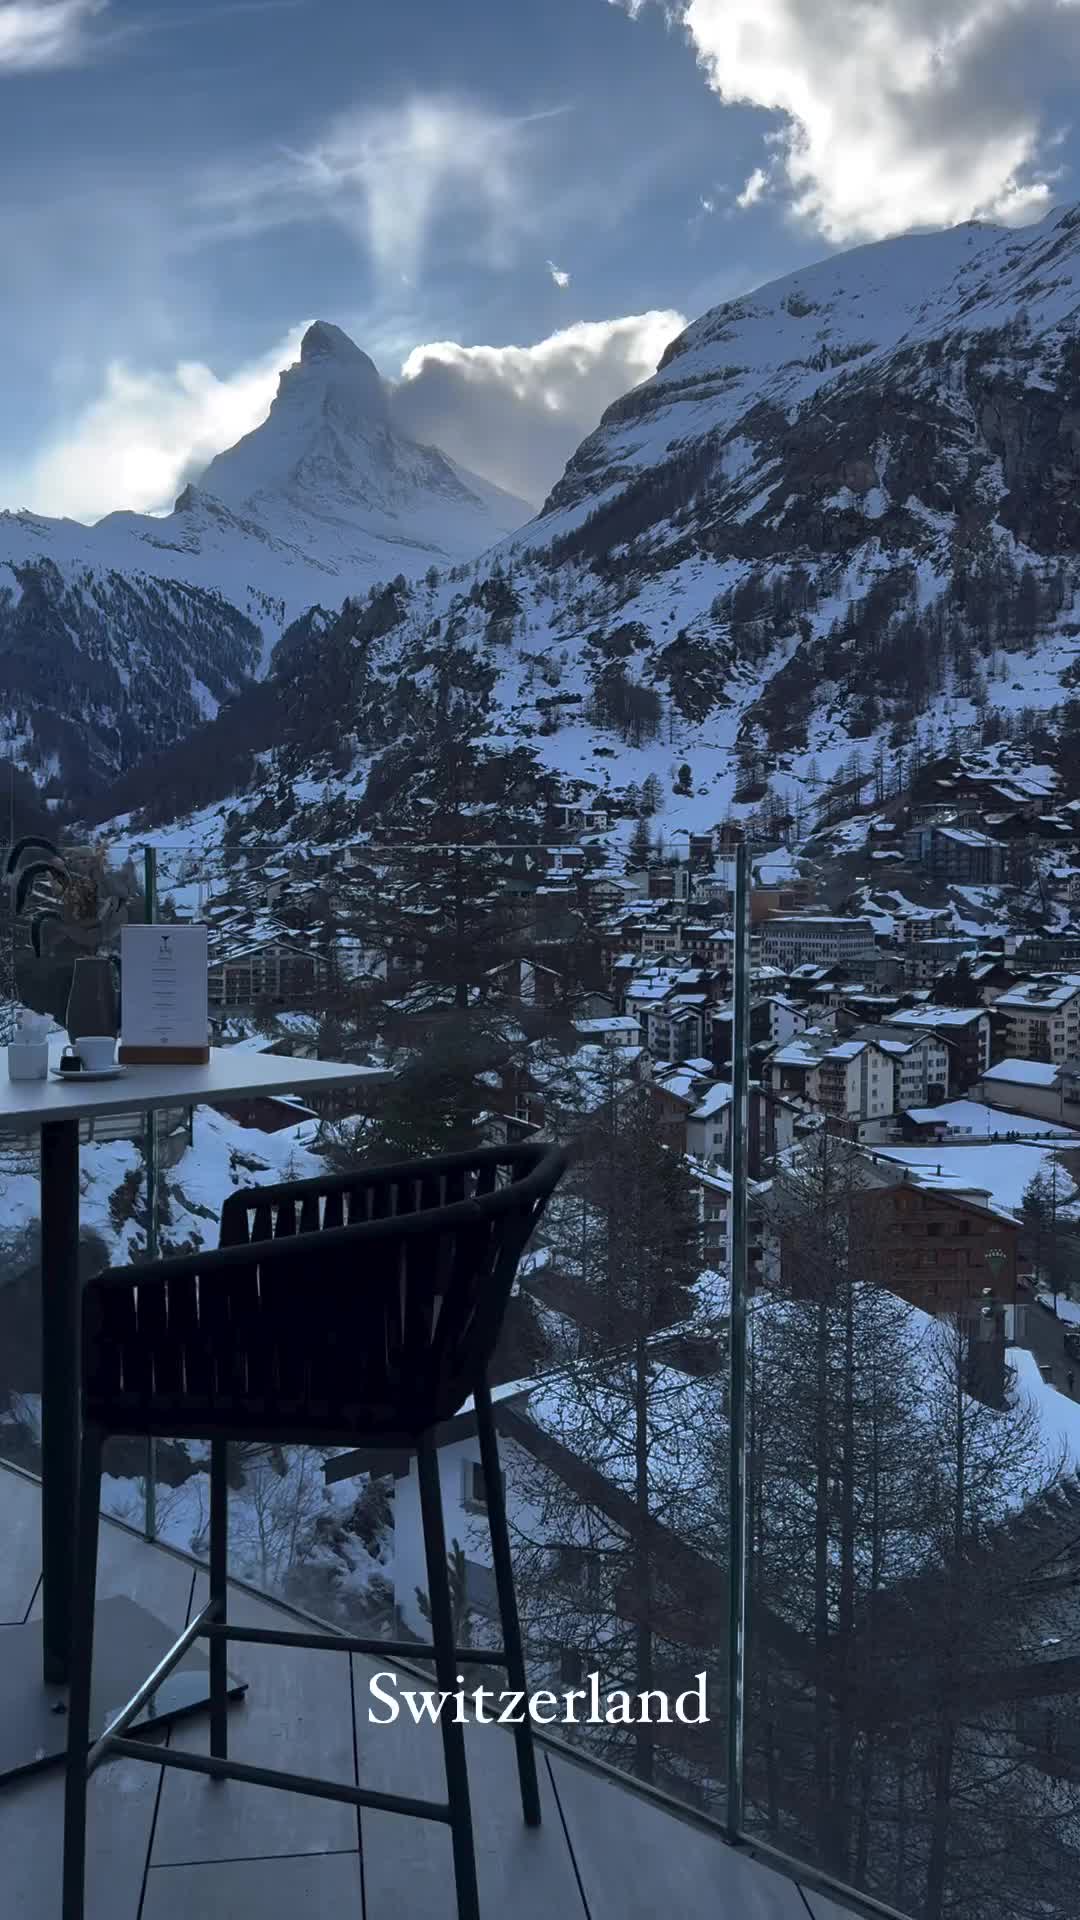 Discover Zermatt: Swiss Alps' Hidden Gem